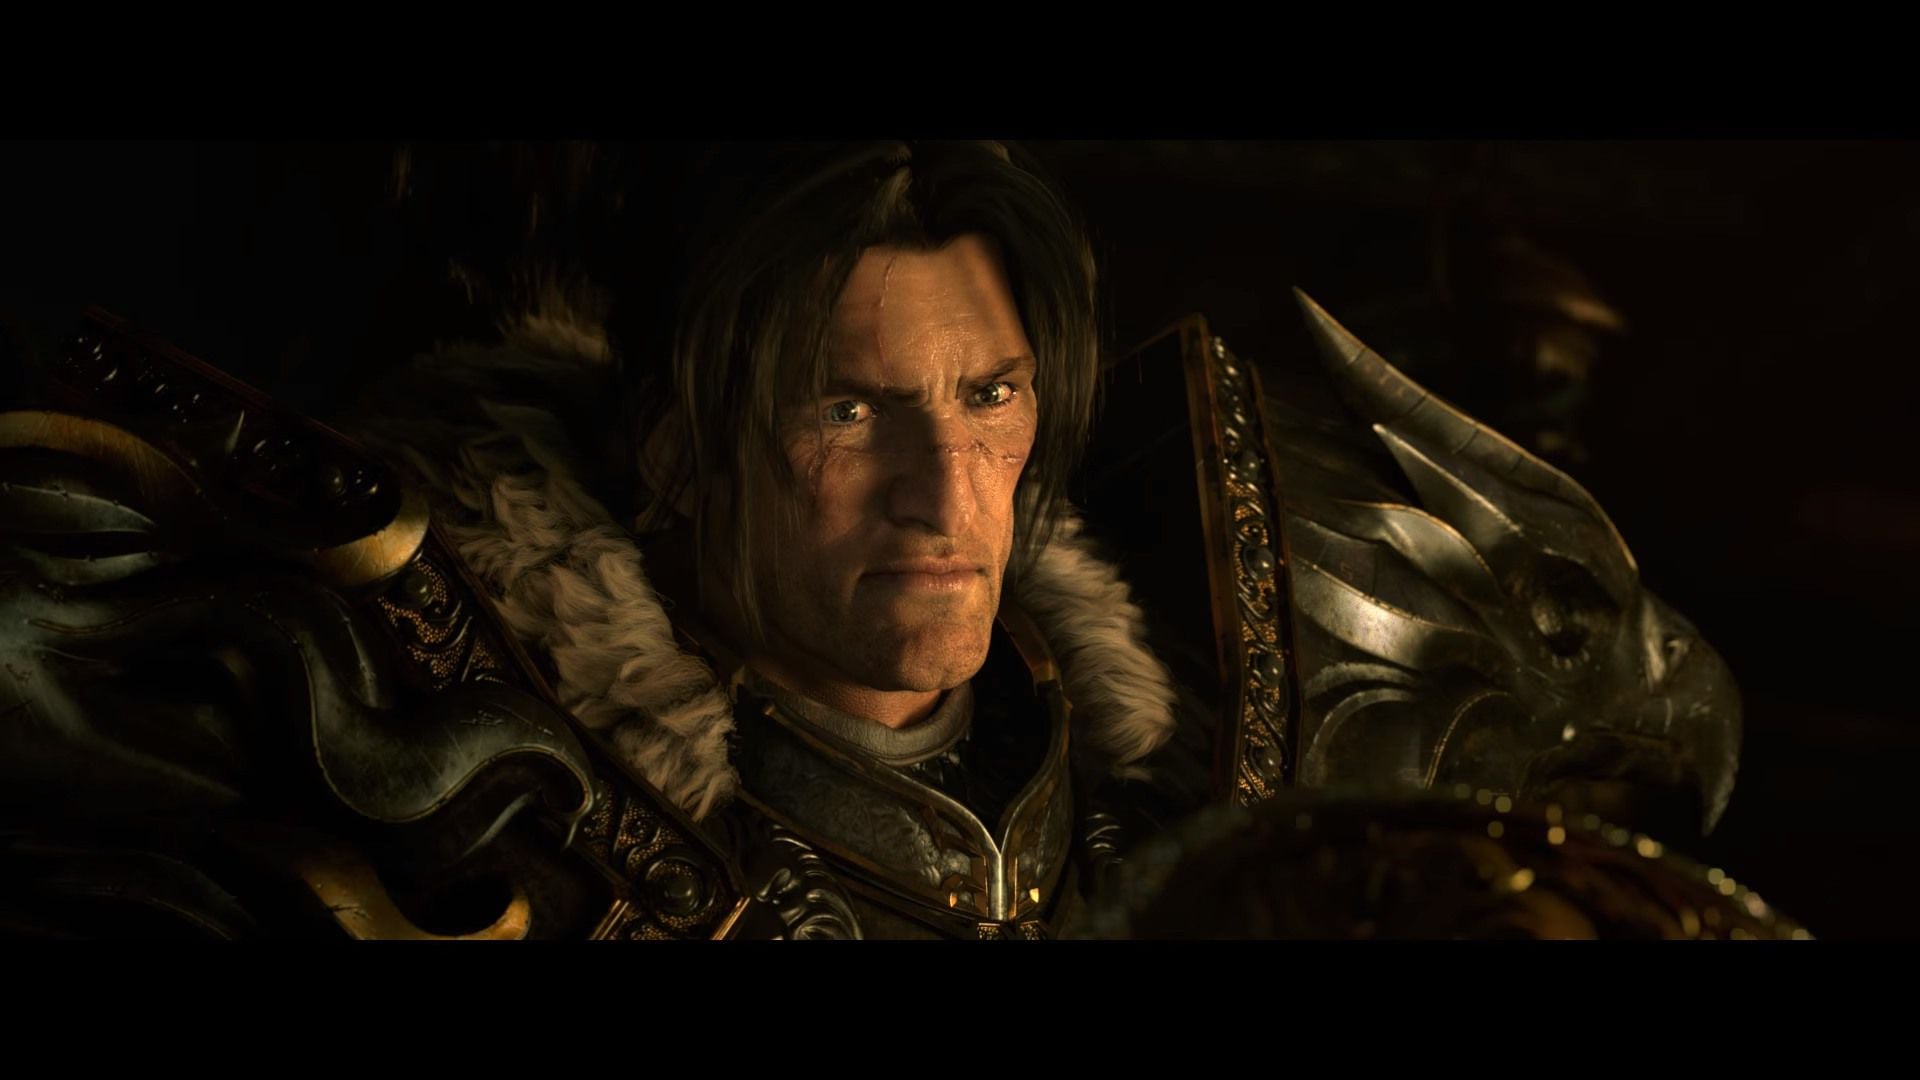 Demon Hunter World Of Warcraft Legion Rexxar